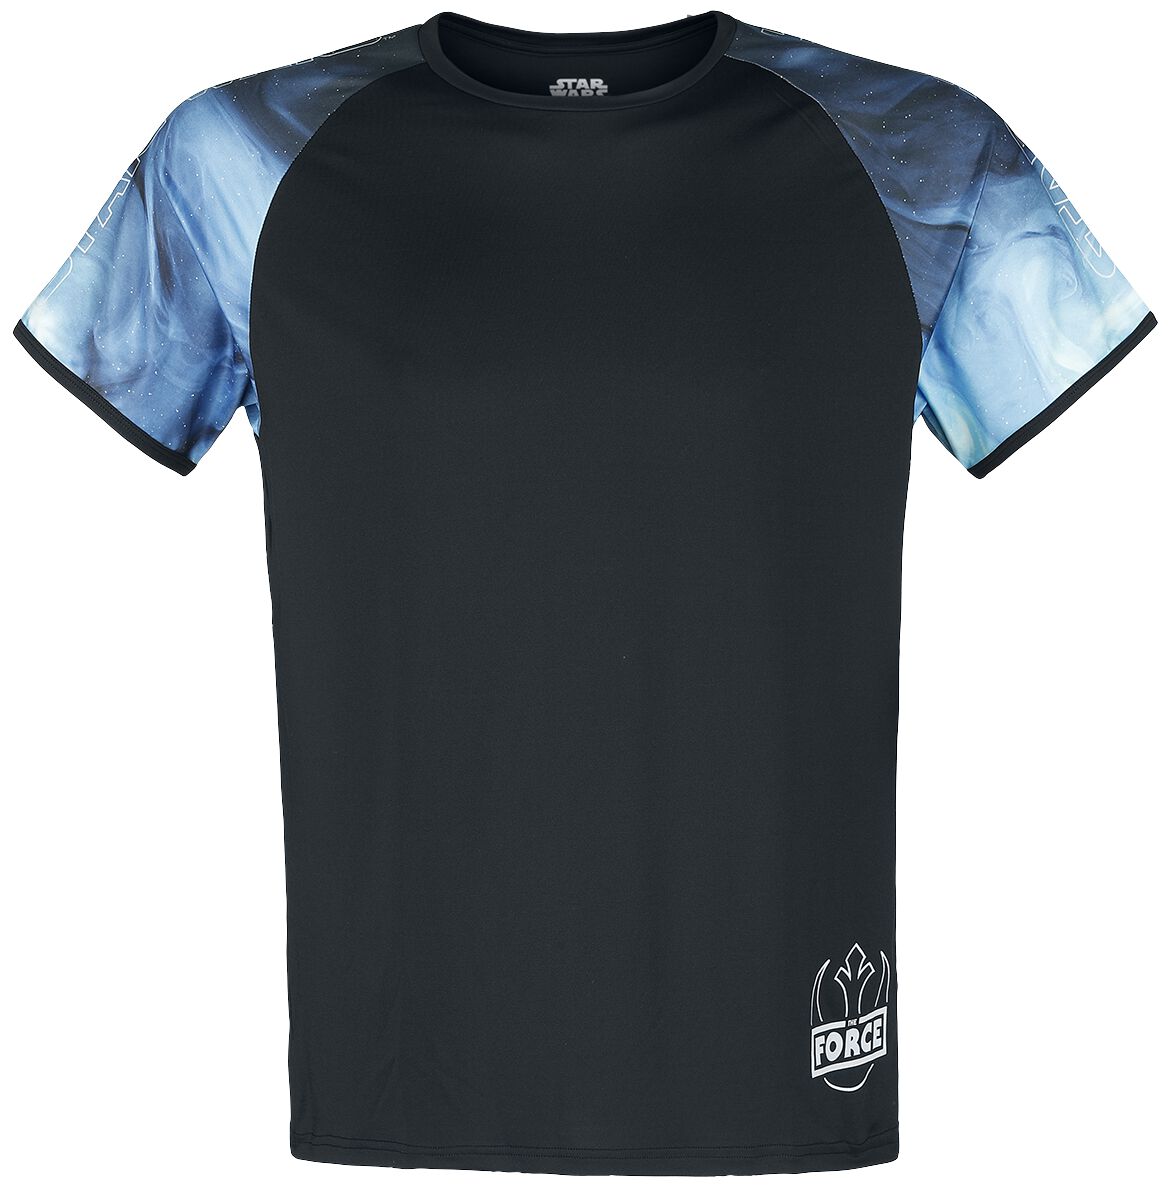 Star Wars T-Shirt - Galaxy - S bis M - für Männer - Größe M - allover  - EMP exklusives Merchandise!